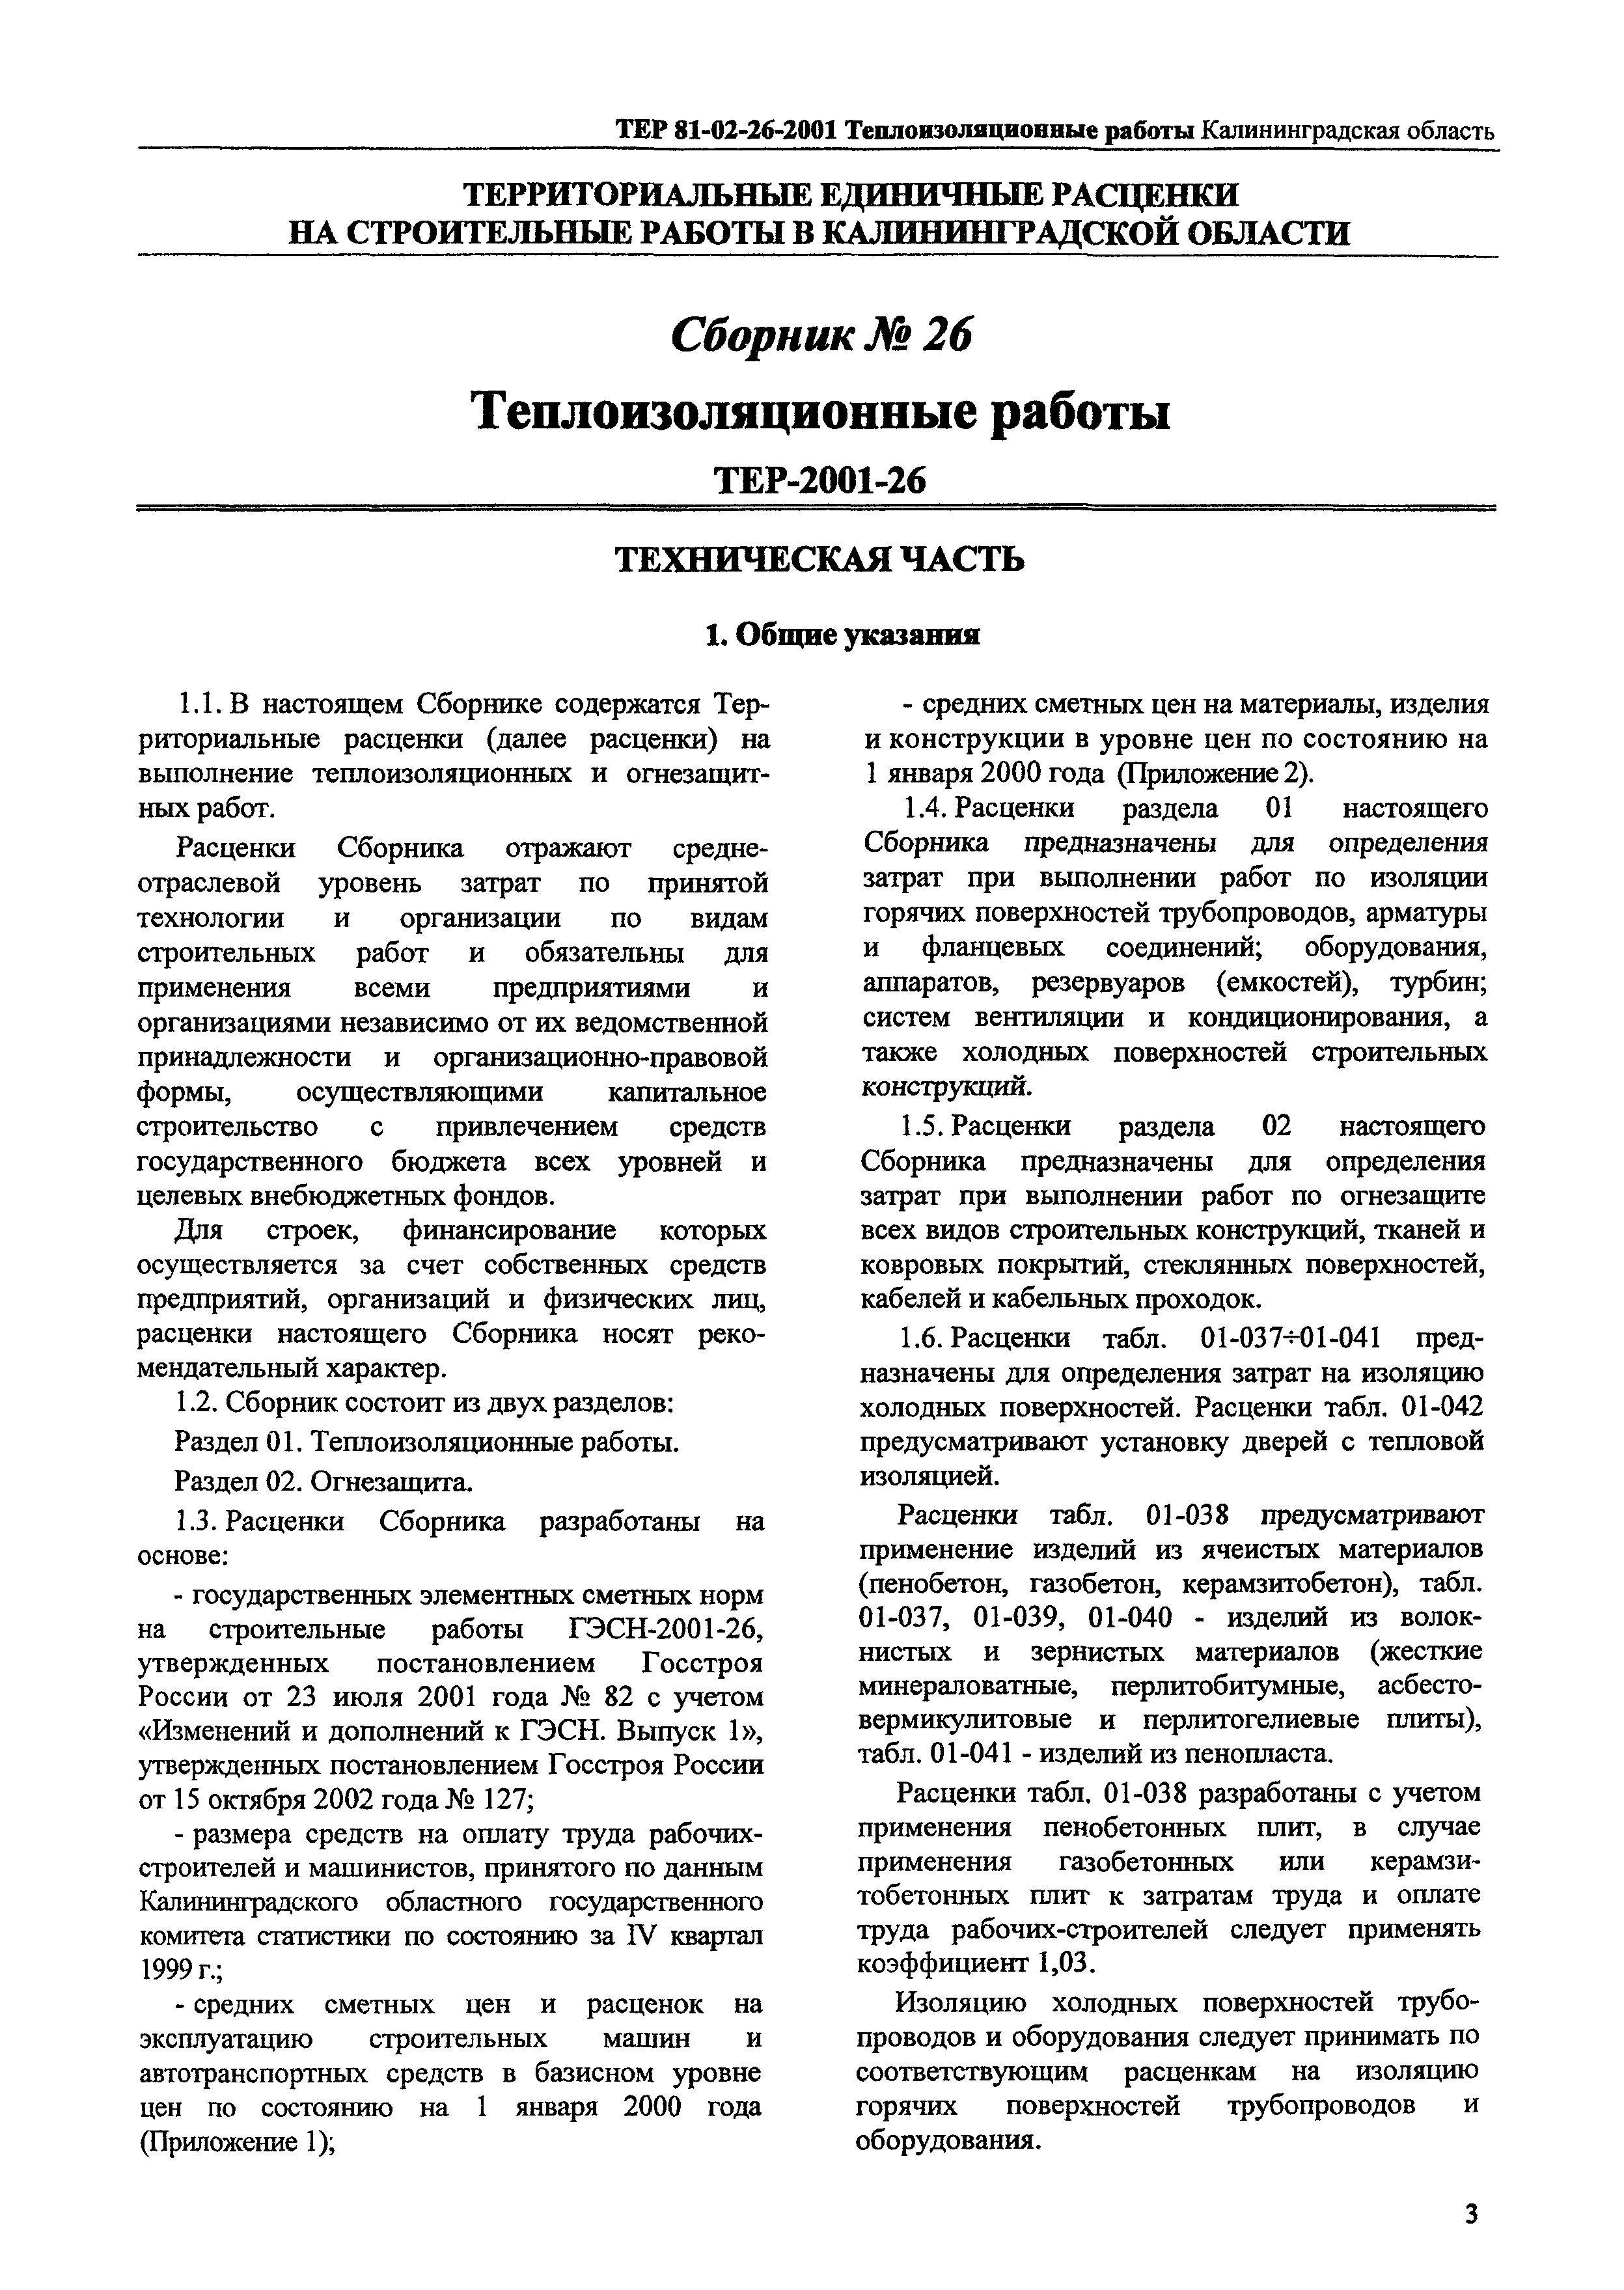 ТЕР Калининградской области 2001-26